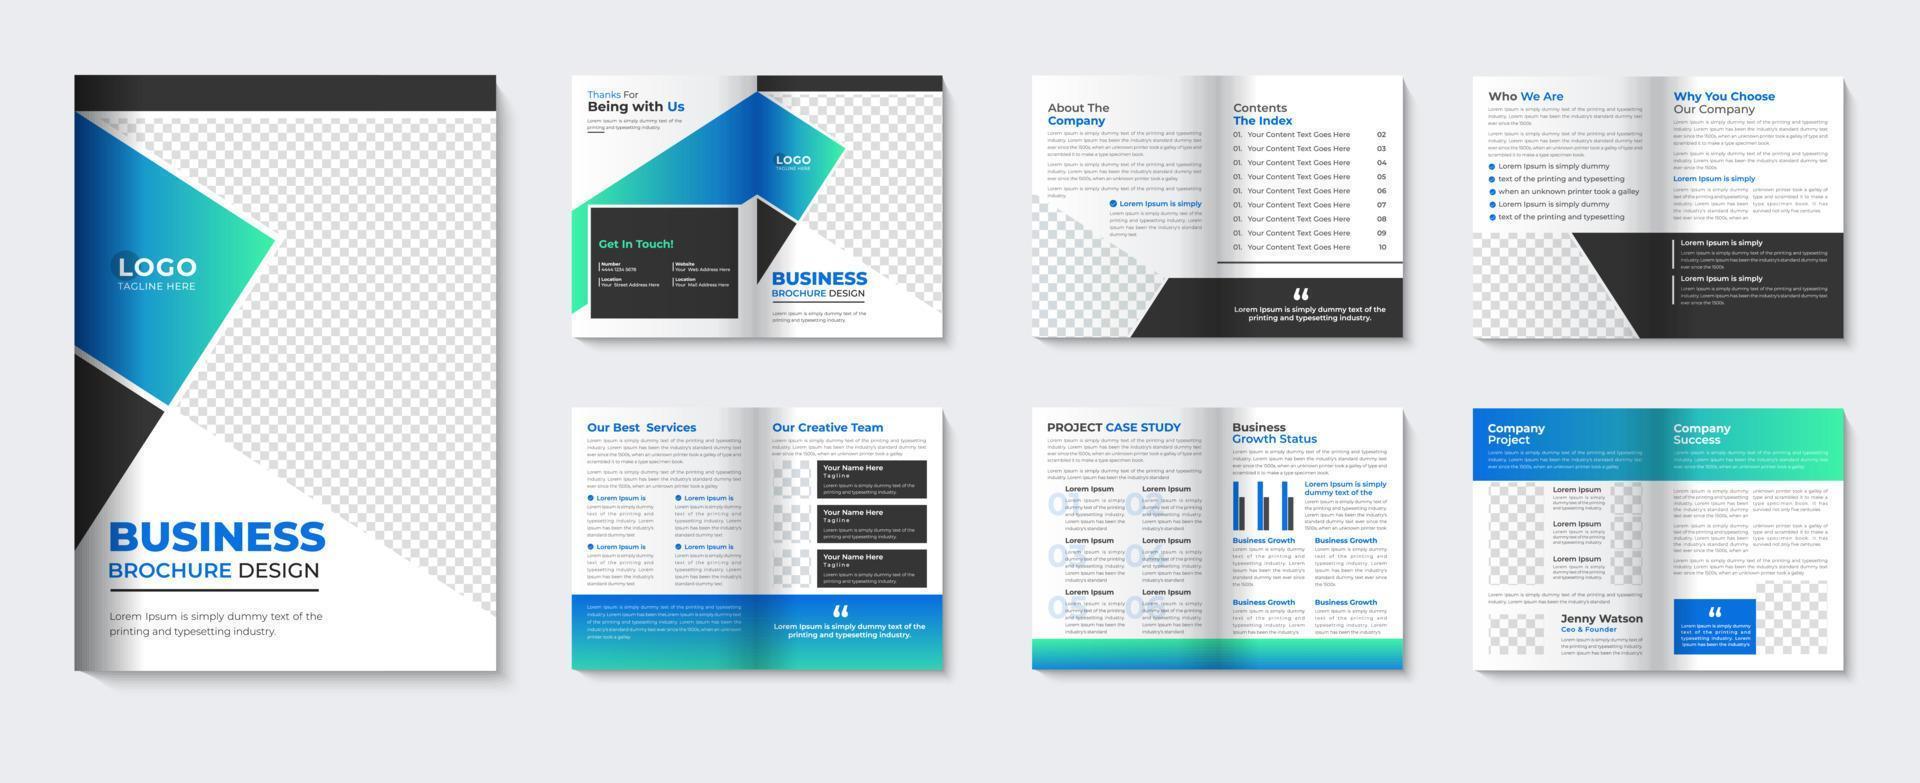 modelo de brochura corporativa e livreto minimalista perfil da empresa capa design de folheto para agência de negócios vetor